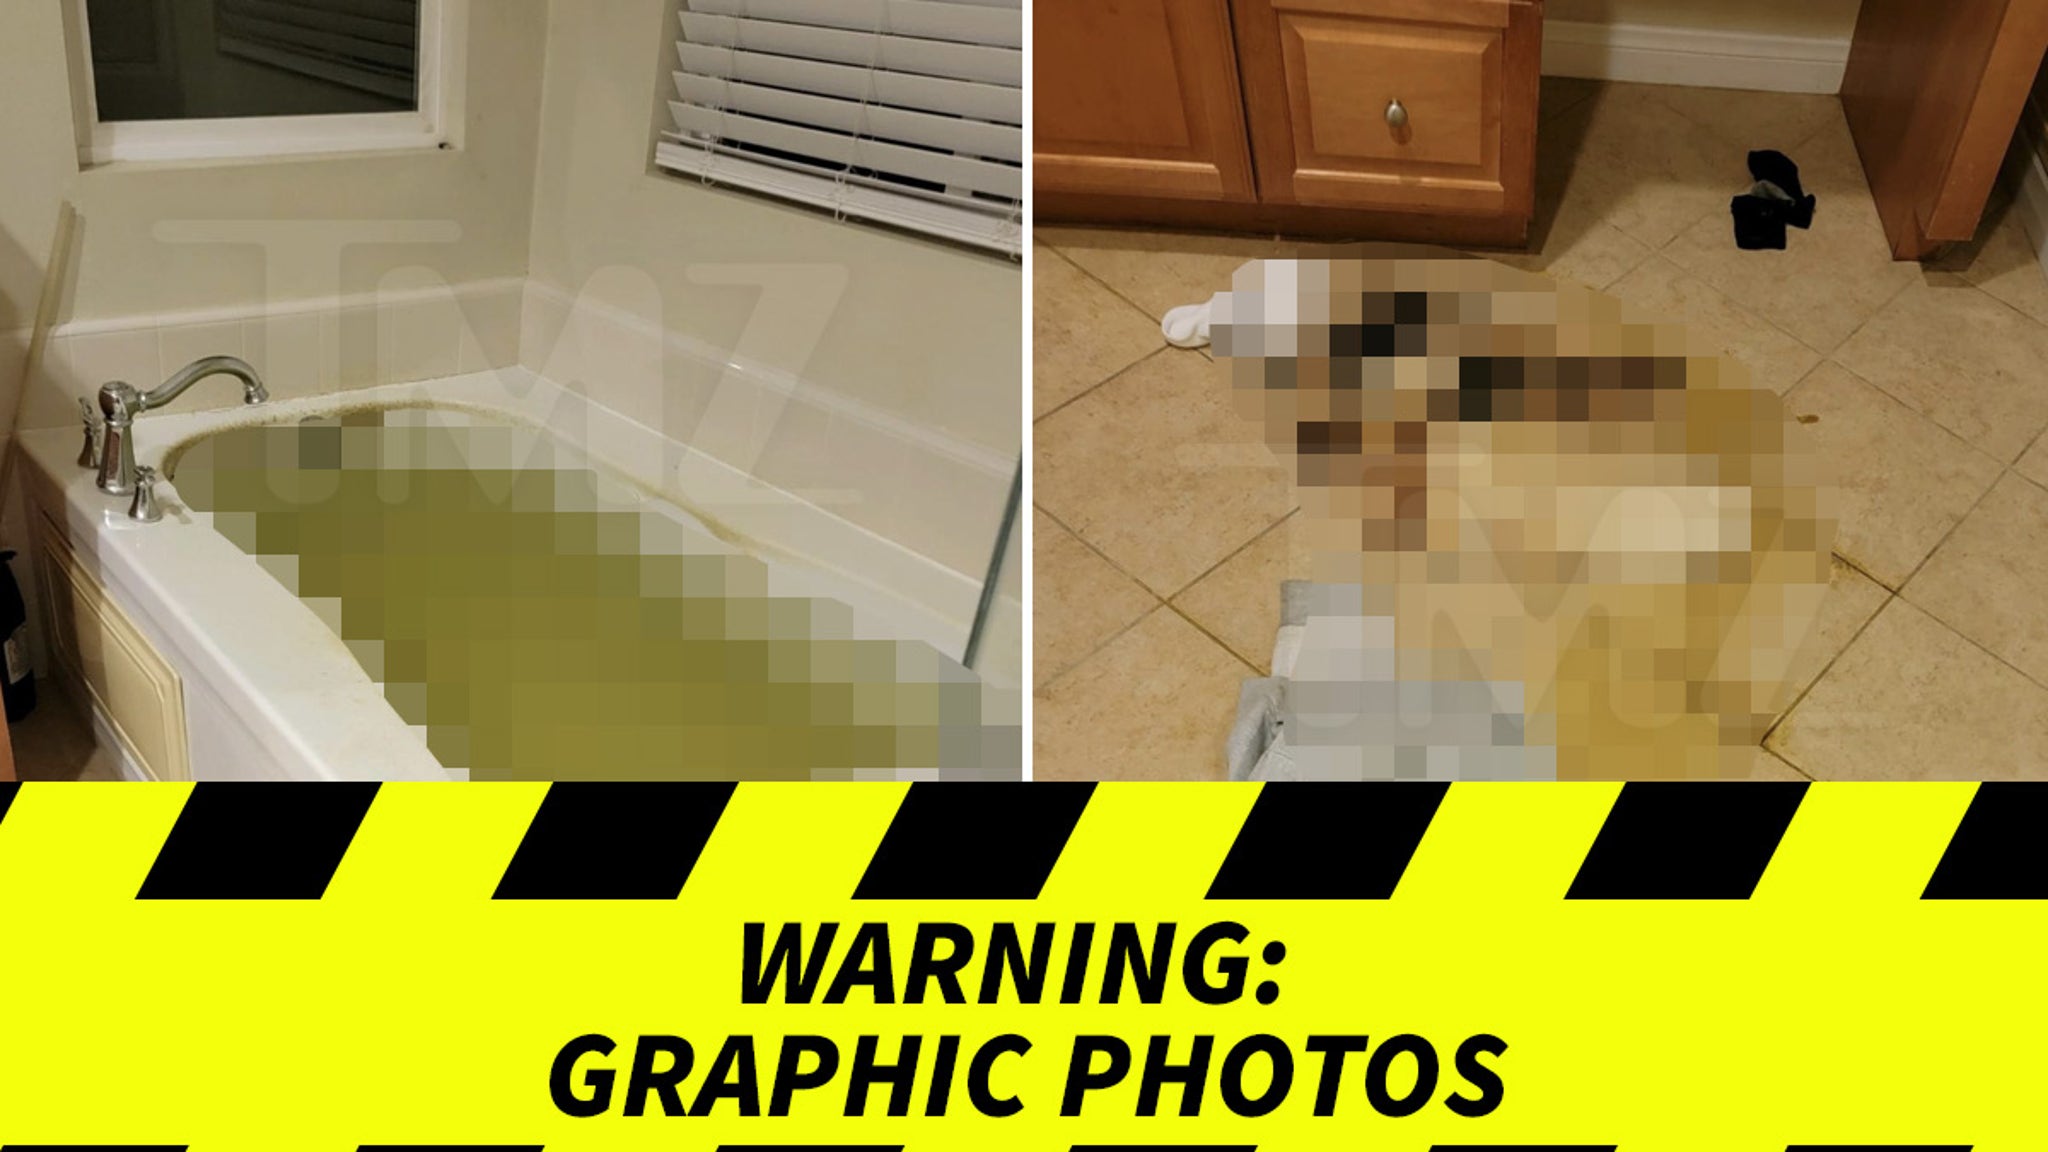 Aaron Carter’s Mom Reveals Death Scene Photos, Demands Cops Keep Investigating